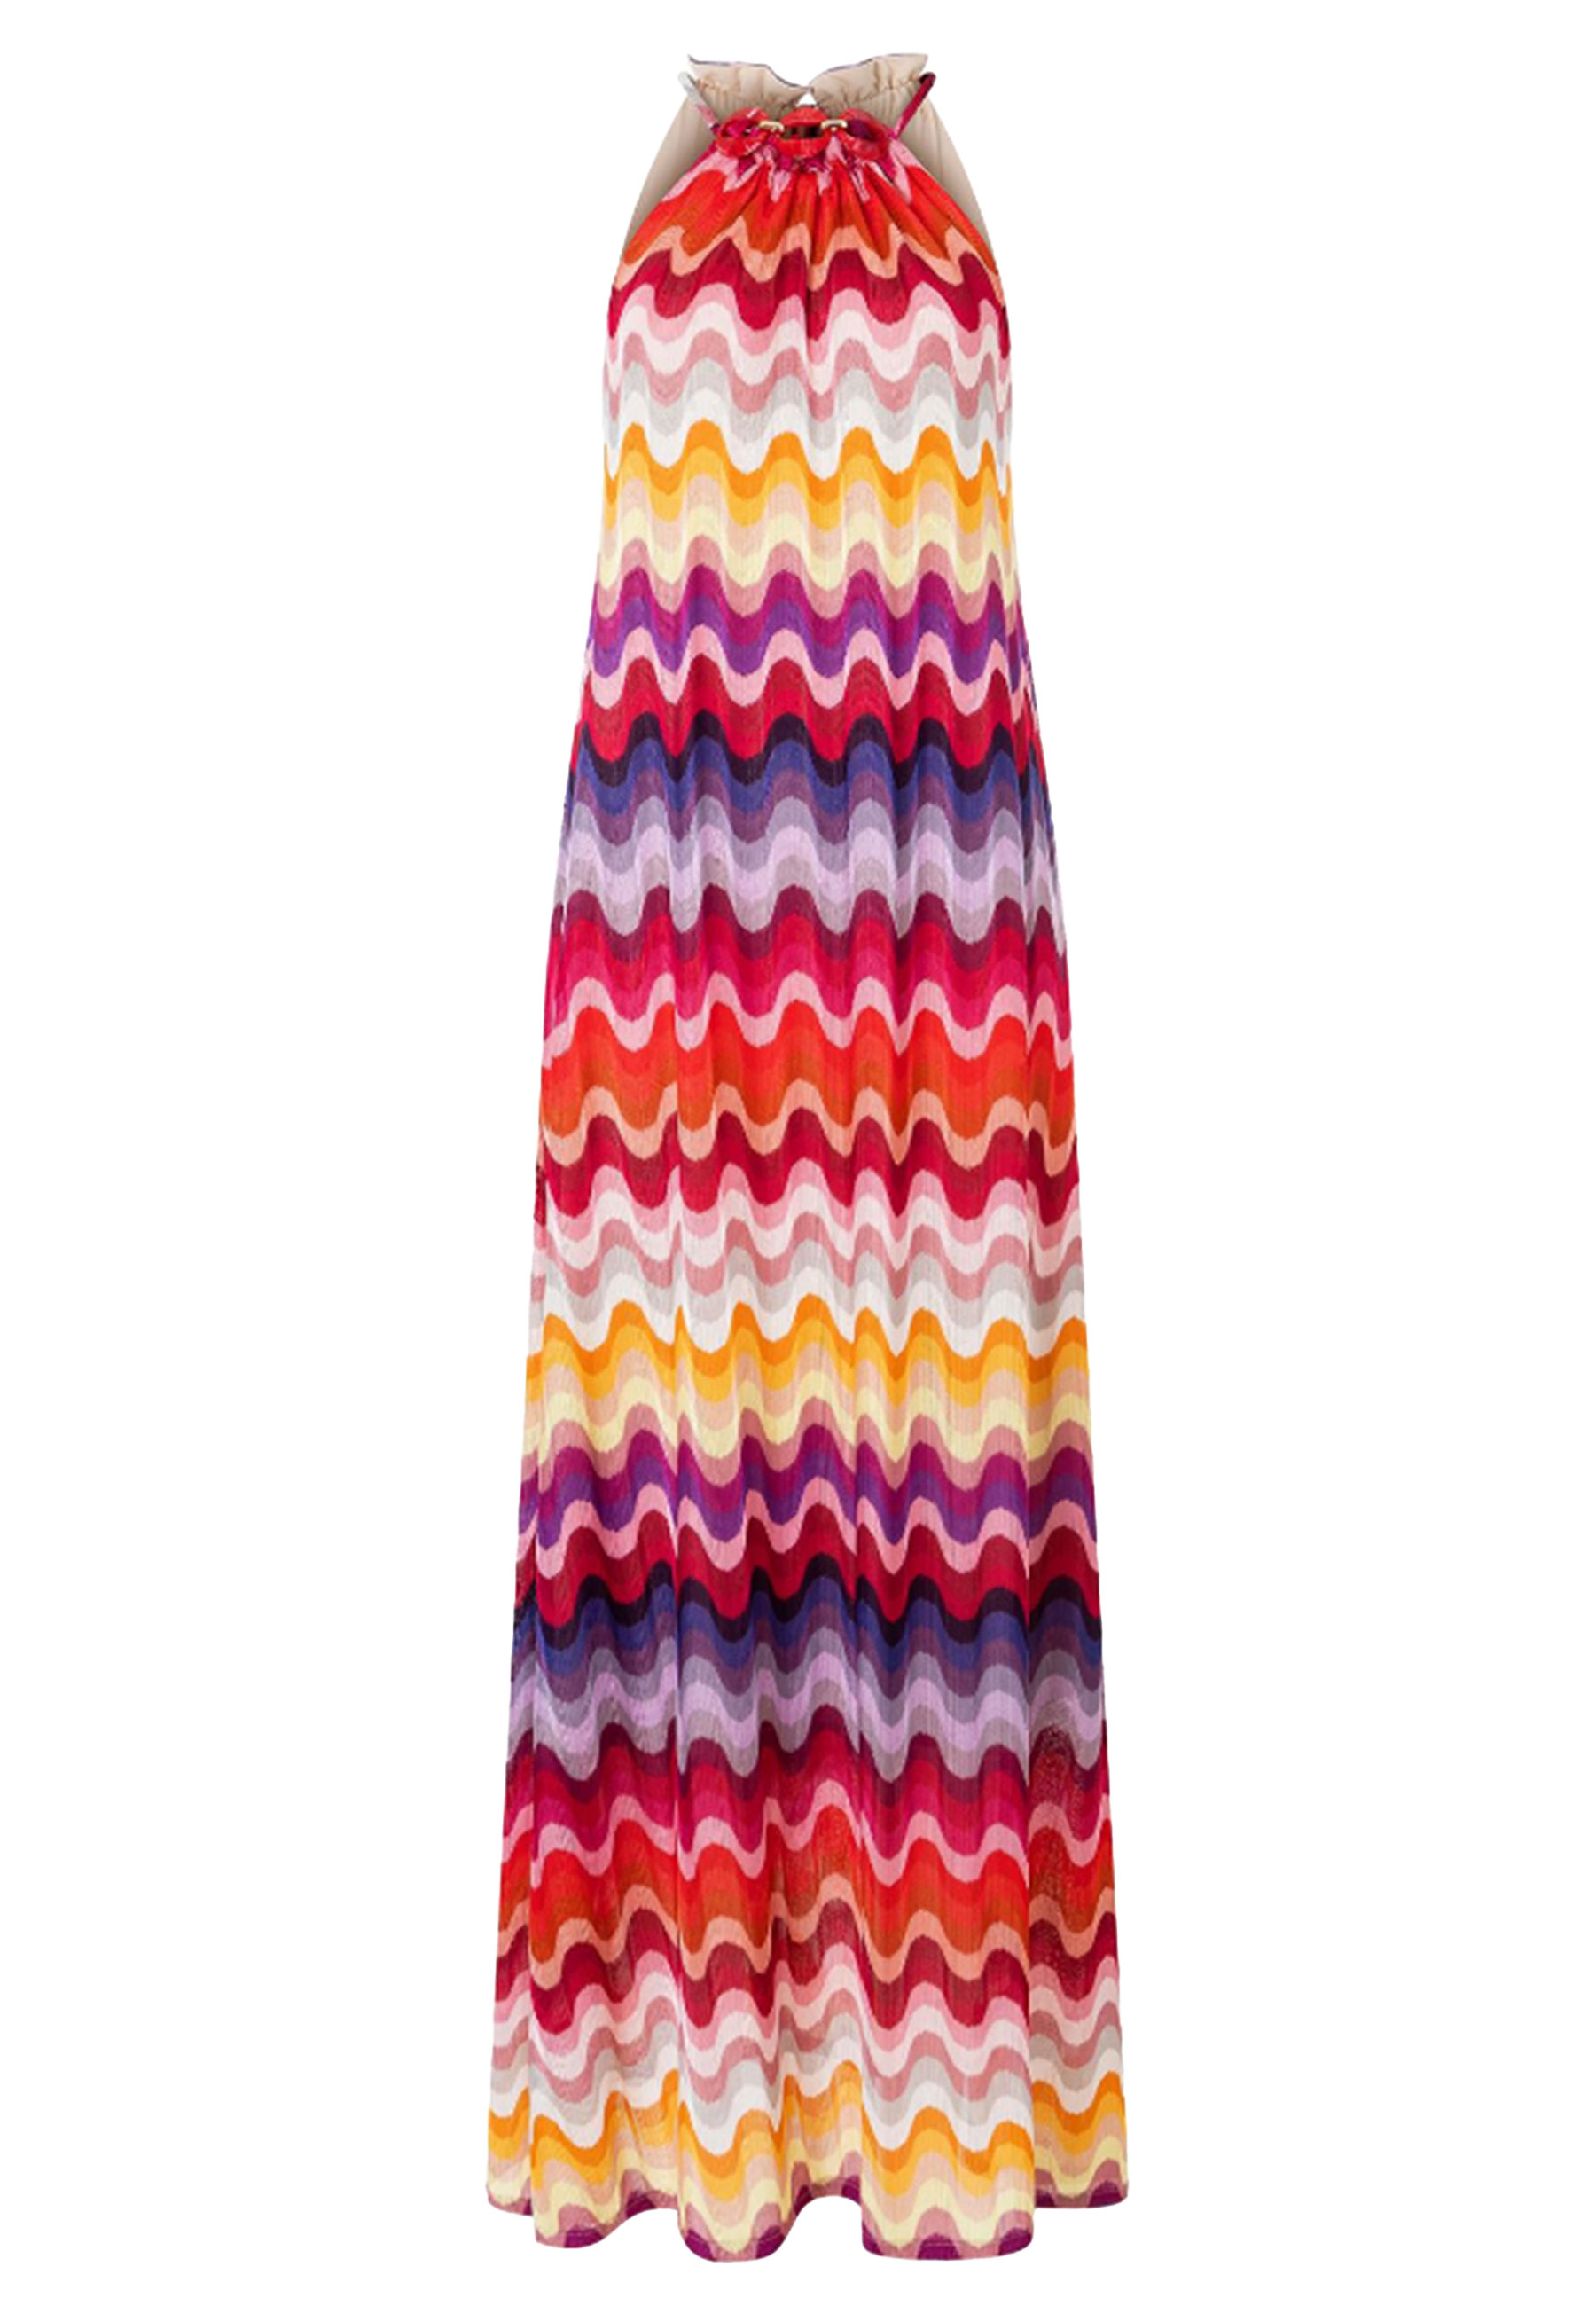 Jurk Multicolor Piwea jurken multicolor